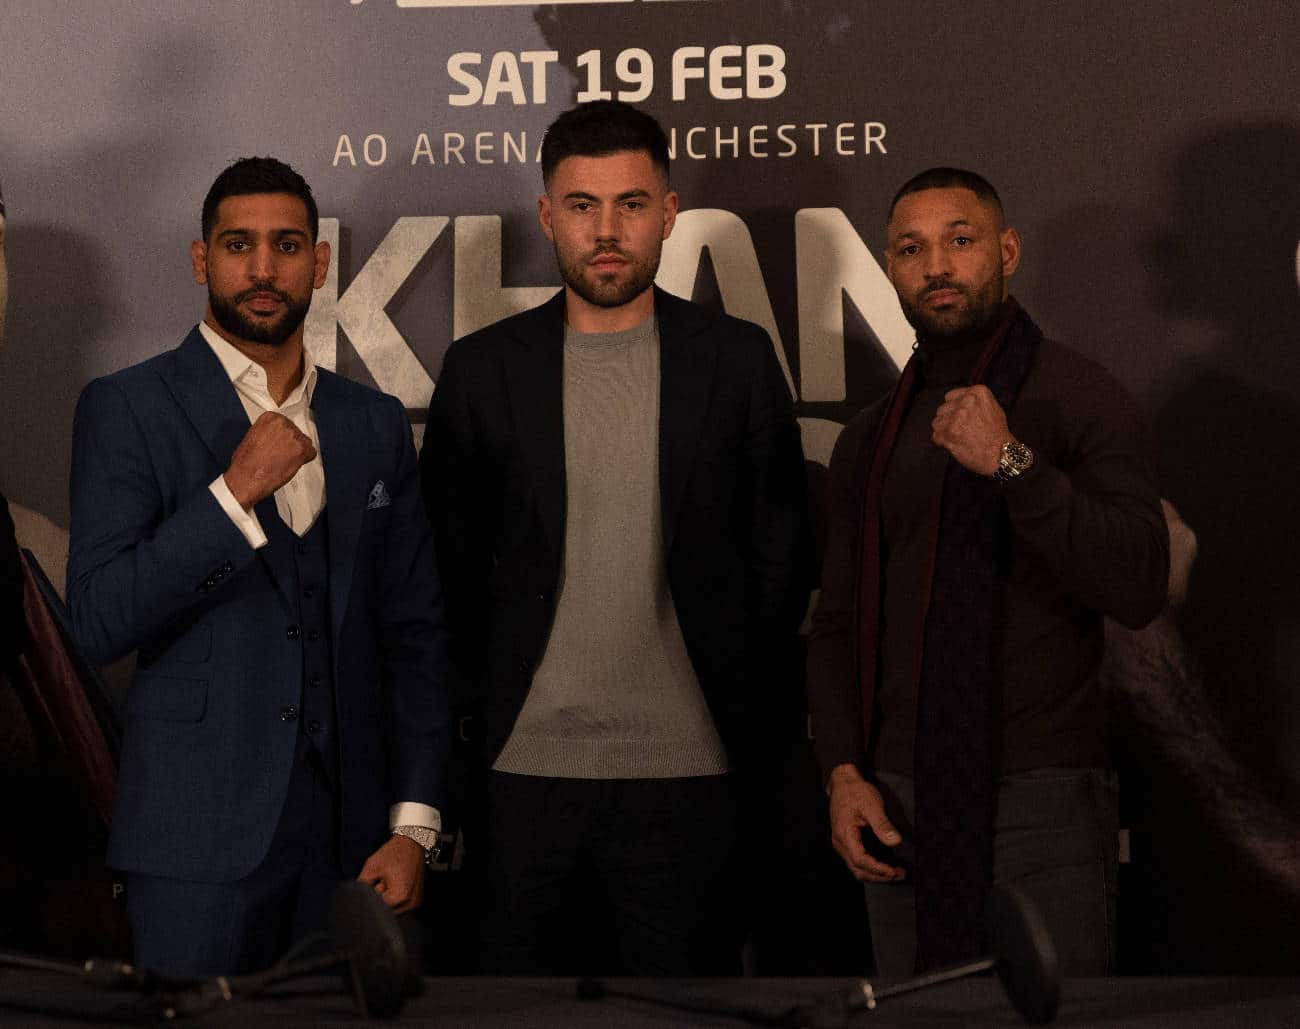 Amir Khan, Kell Brook boxing photo and news image